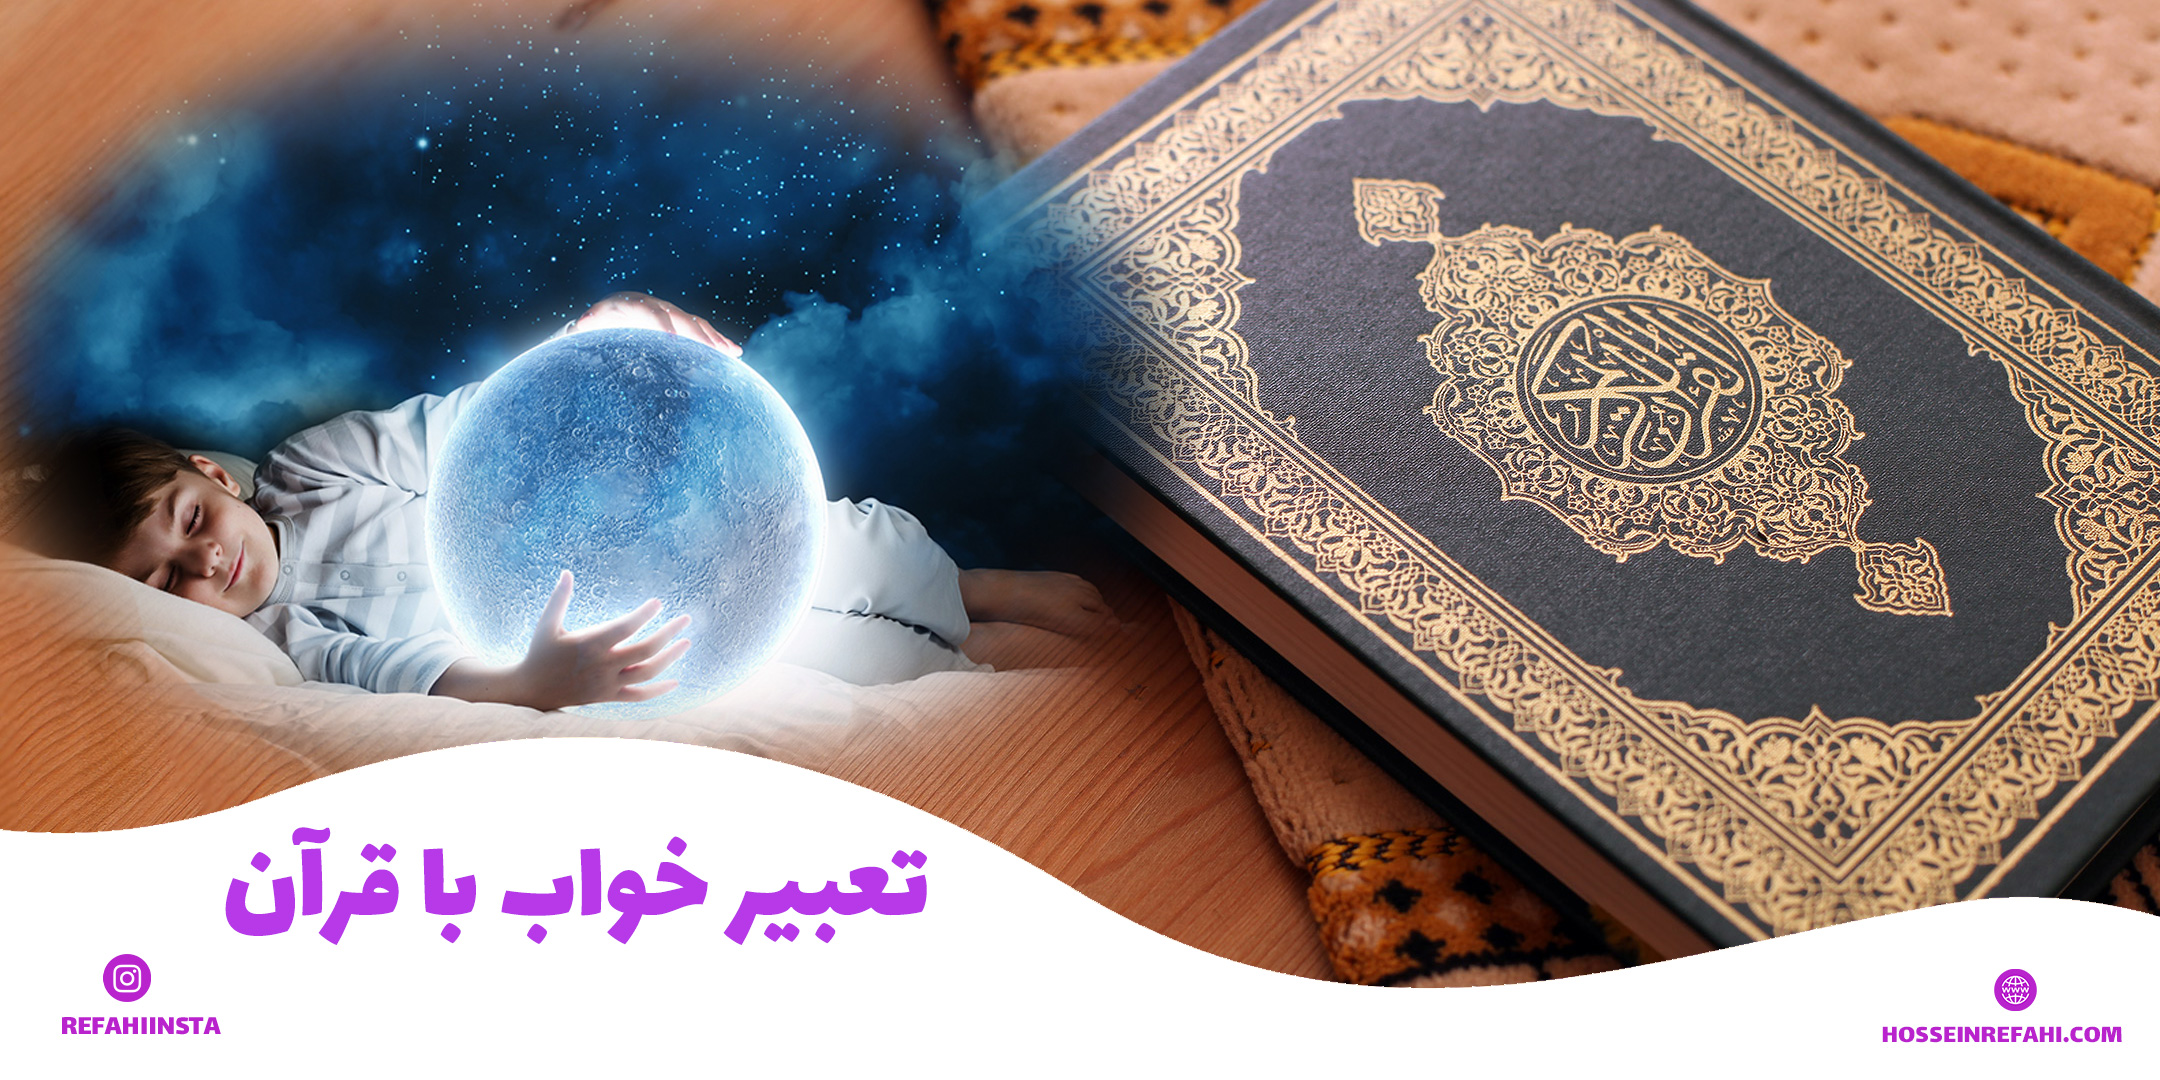 تعبیر خواب با قرآن